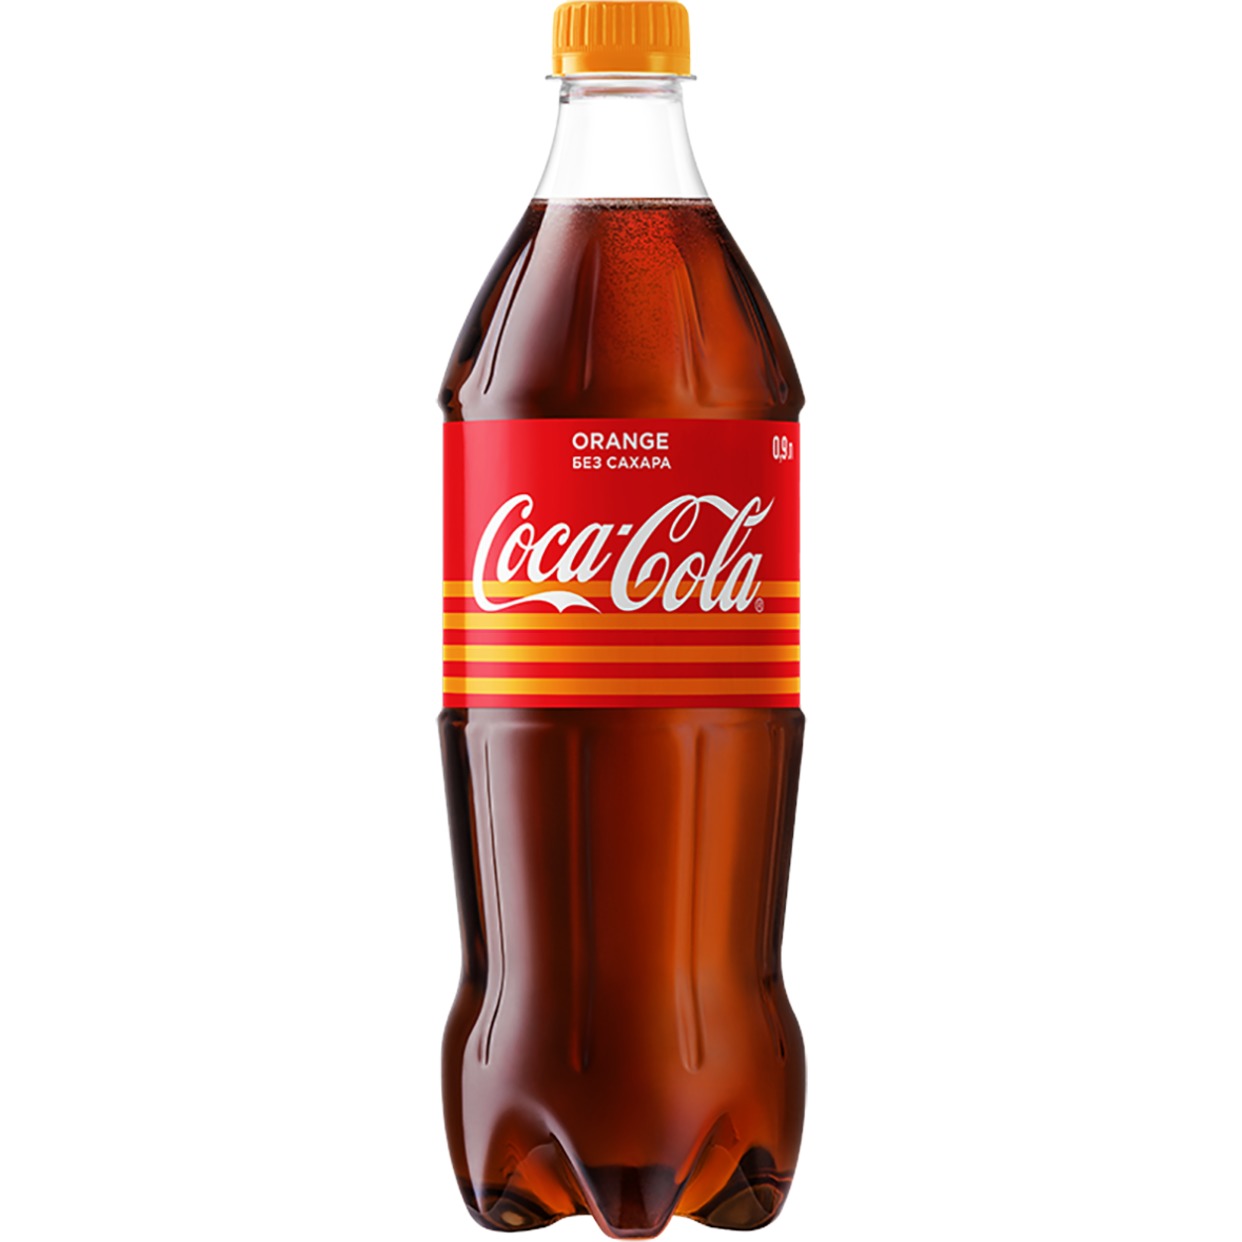 Напиток "Кока-Кола со вкусом апельсина" (Coca-Cola Orange) б/алк.сил.газ.0,9л по акции в Пятерочке